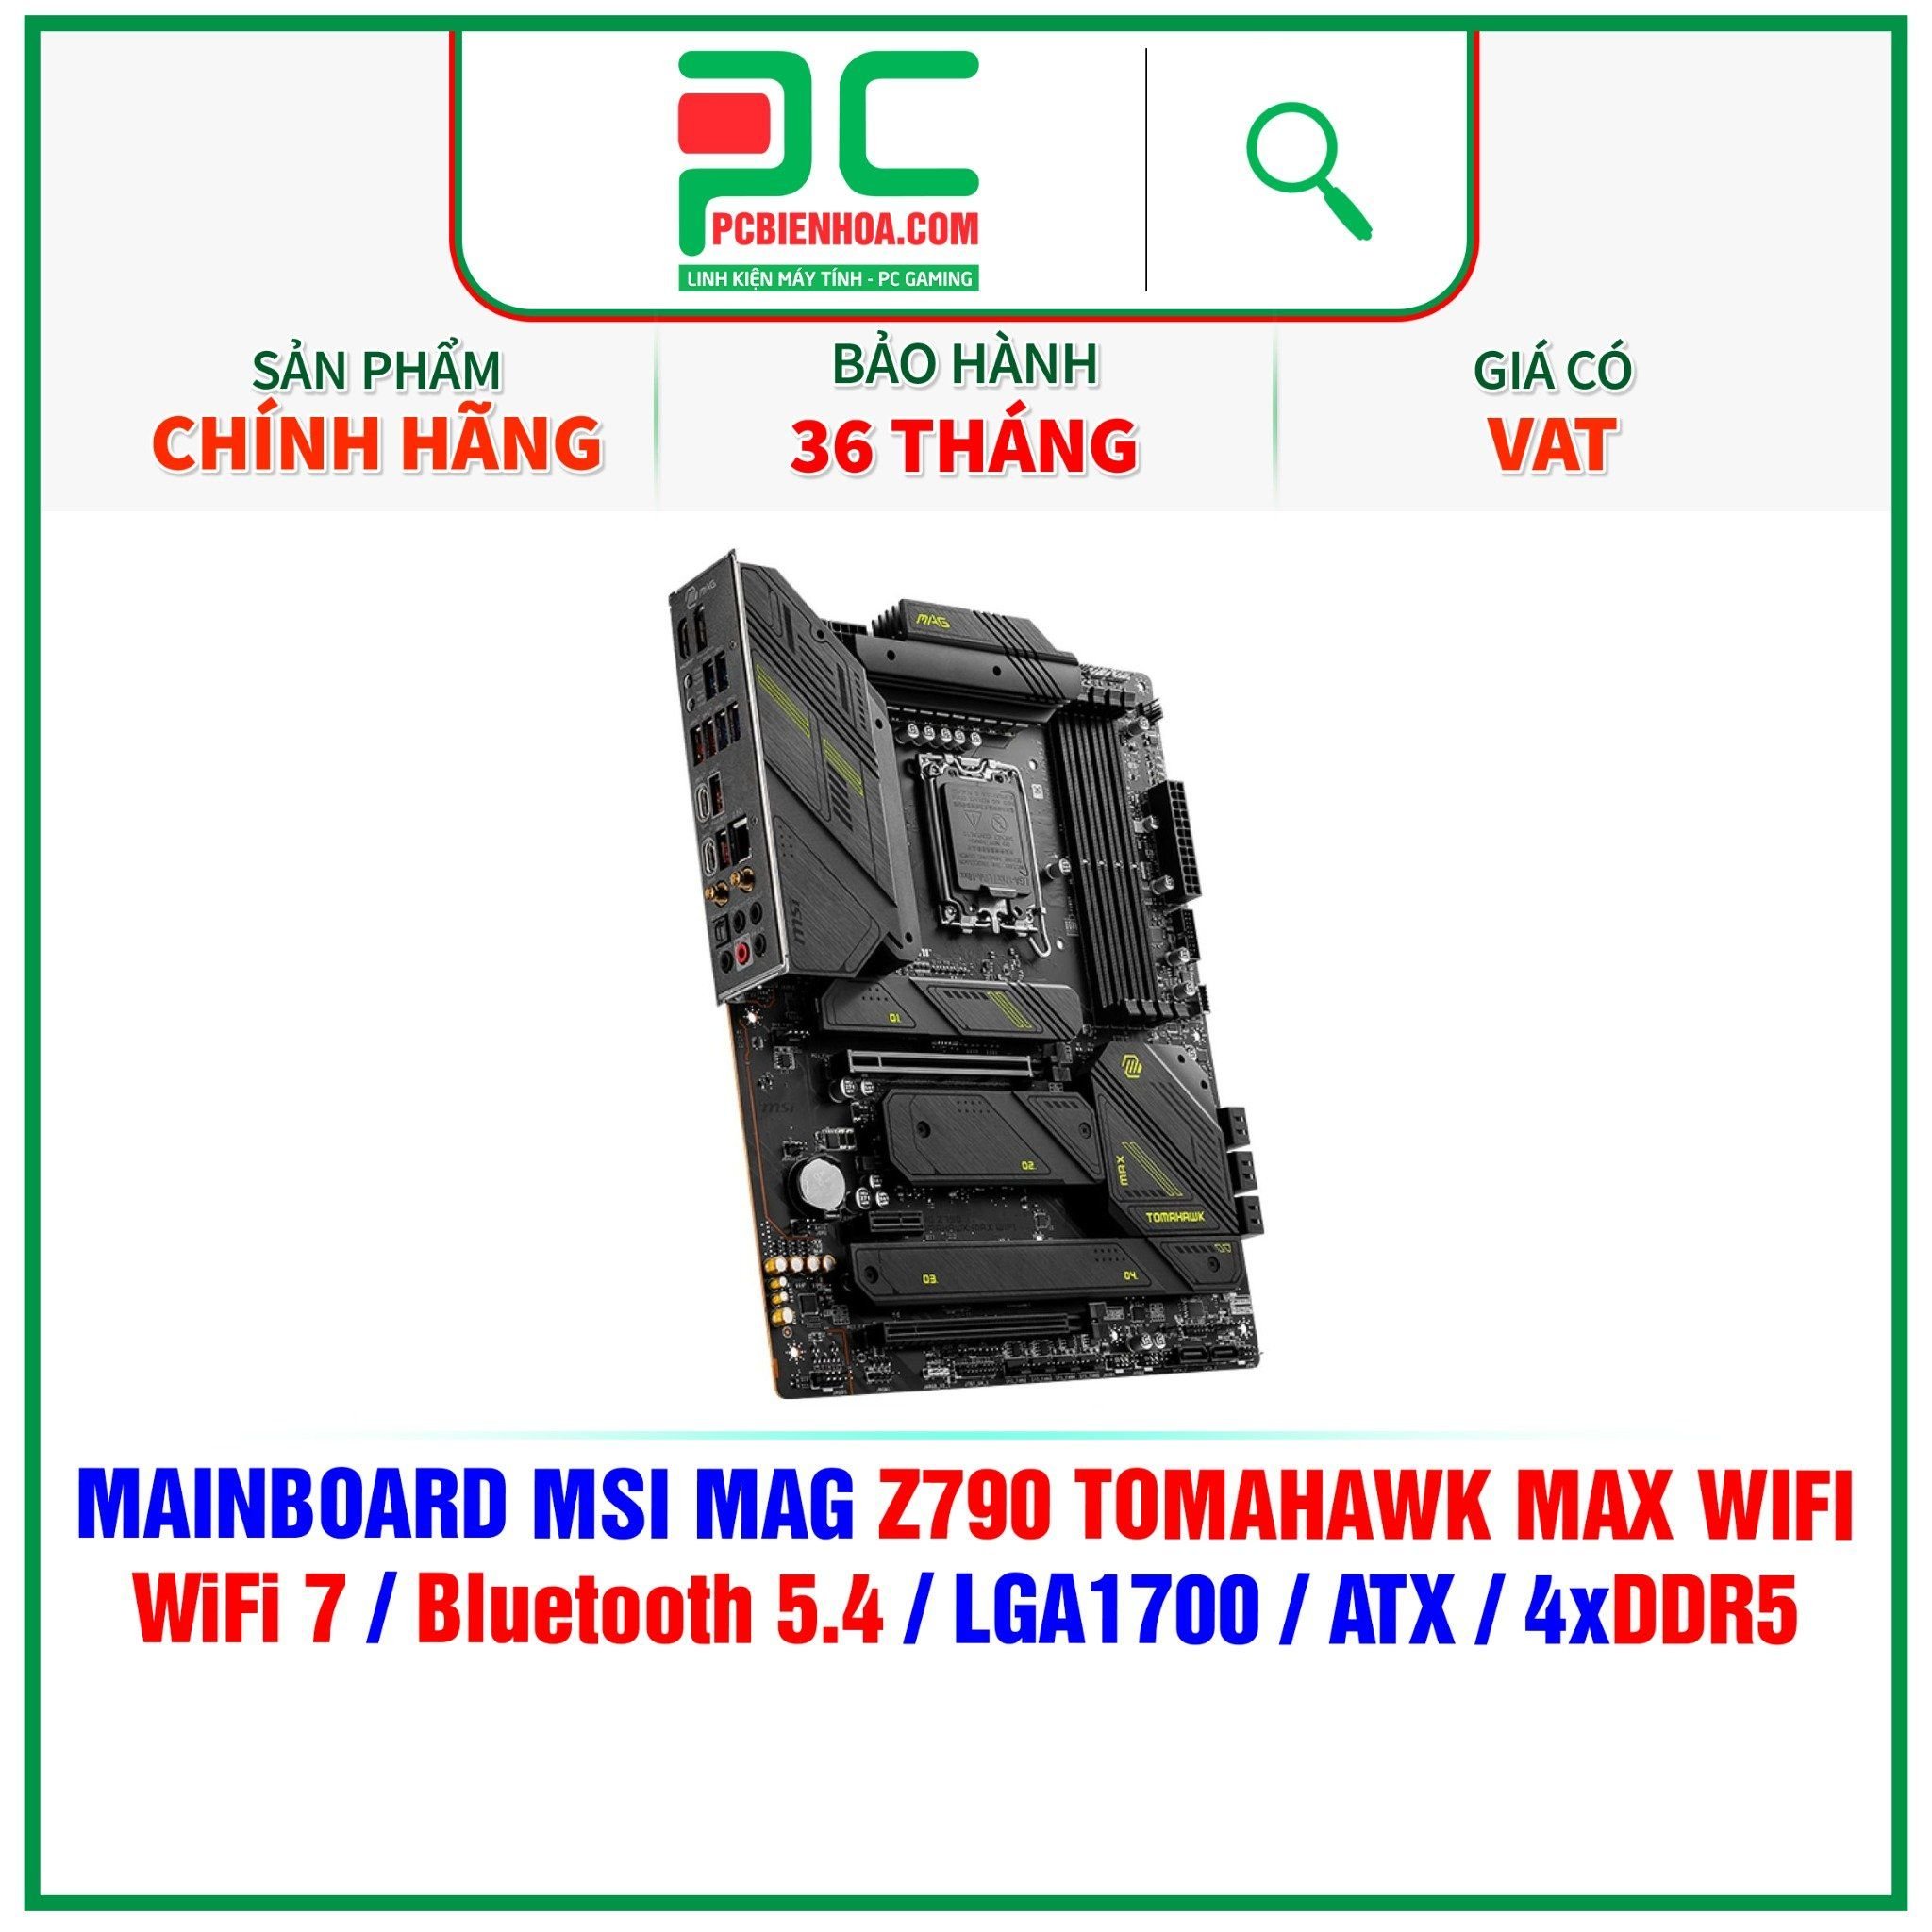  DDR5 - MAINBOARD MSI MAG Z790 TOMAHAWK MAX WIFI ( WIFI 7 / Bluetooth 5.4 / LGA1700 / ATX / 4xDDR5 ) 